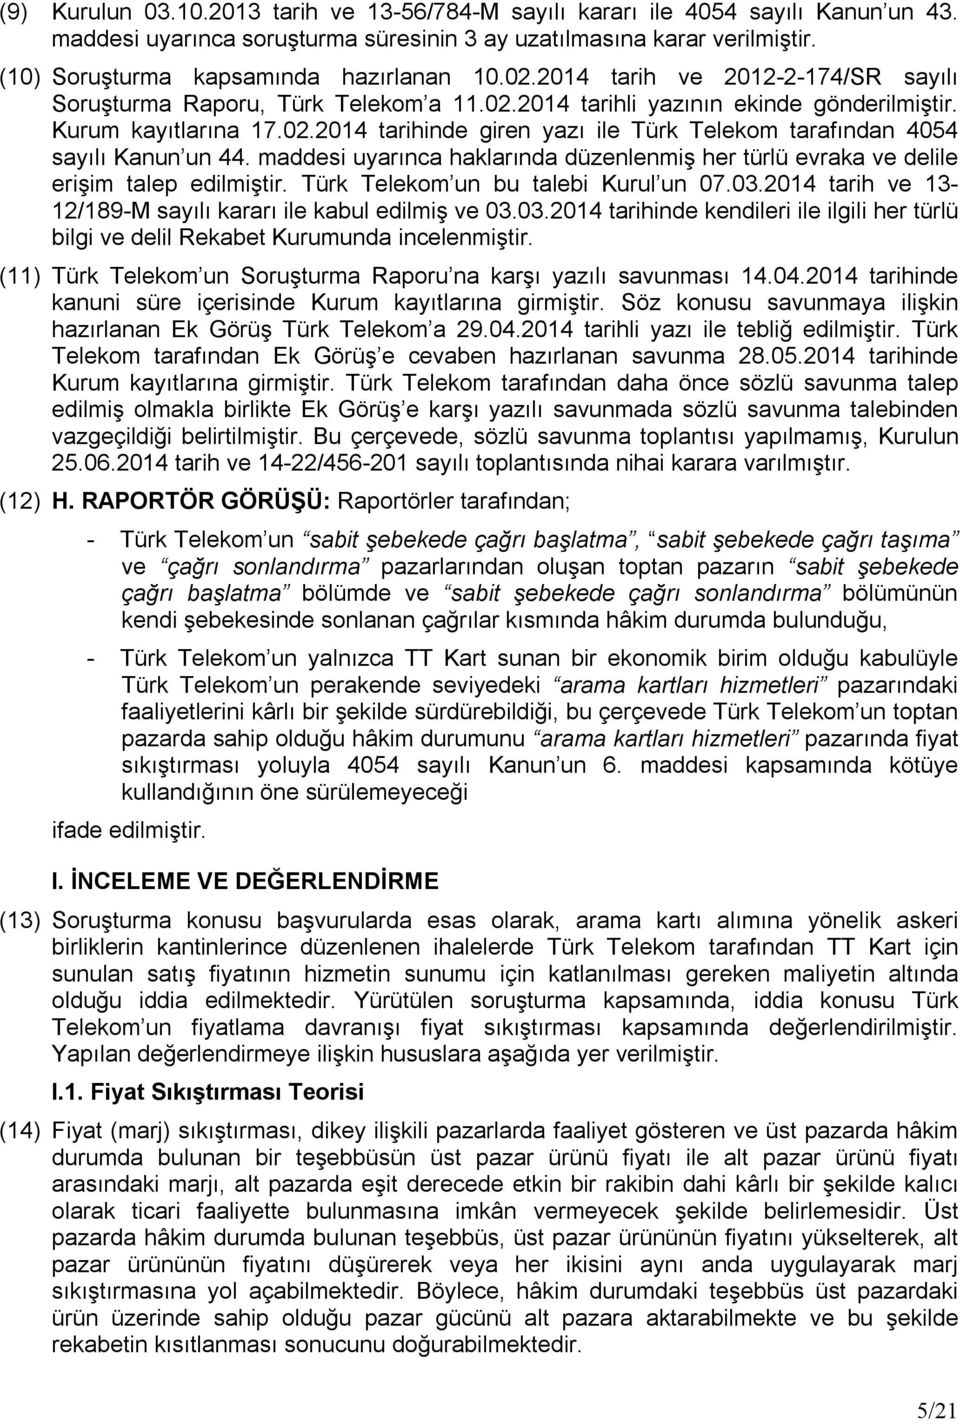 maddesi uyarınca haklarında düzenlenmiş her türlü evraka ve delile erişim talep edilmiştir. Türk Telekom un bu talebi Kurul un 07.03.